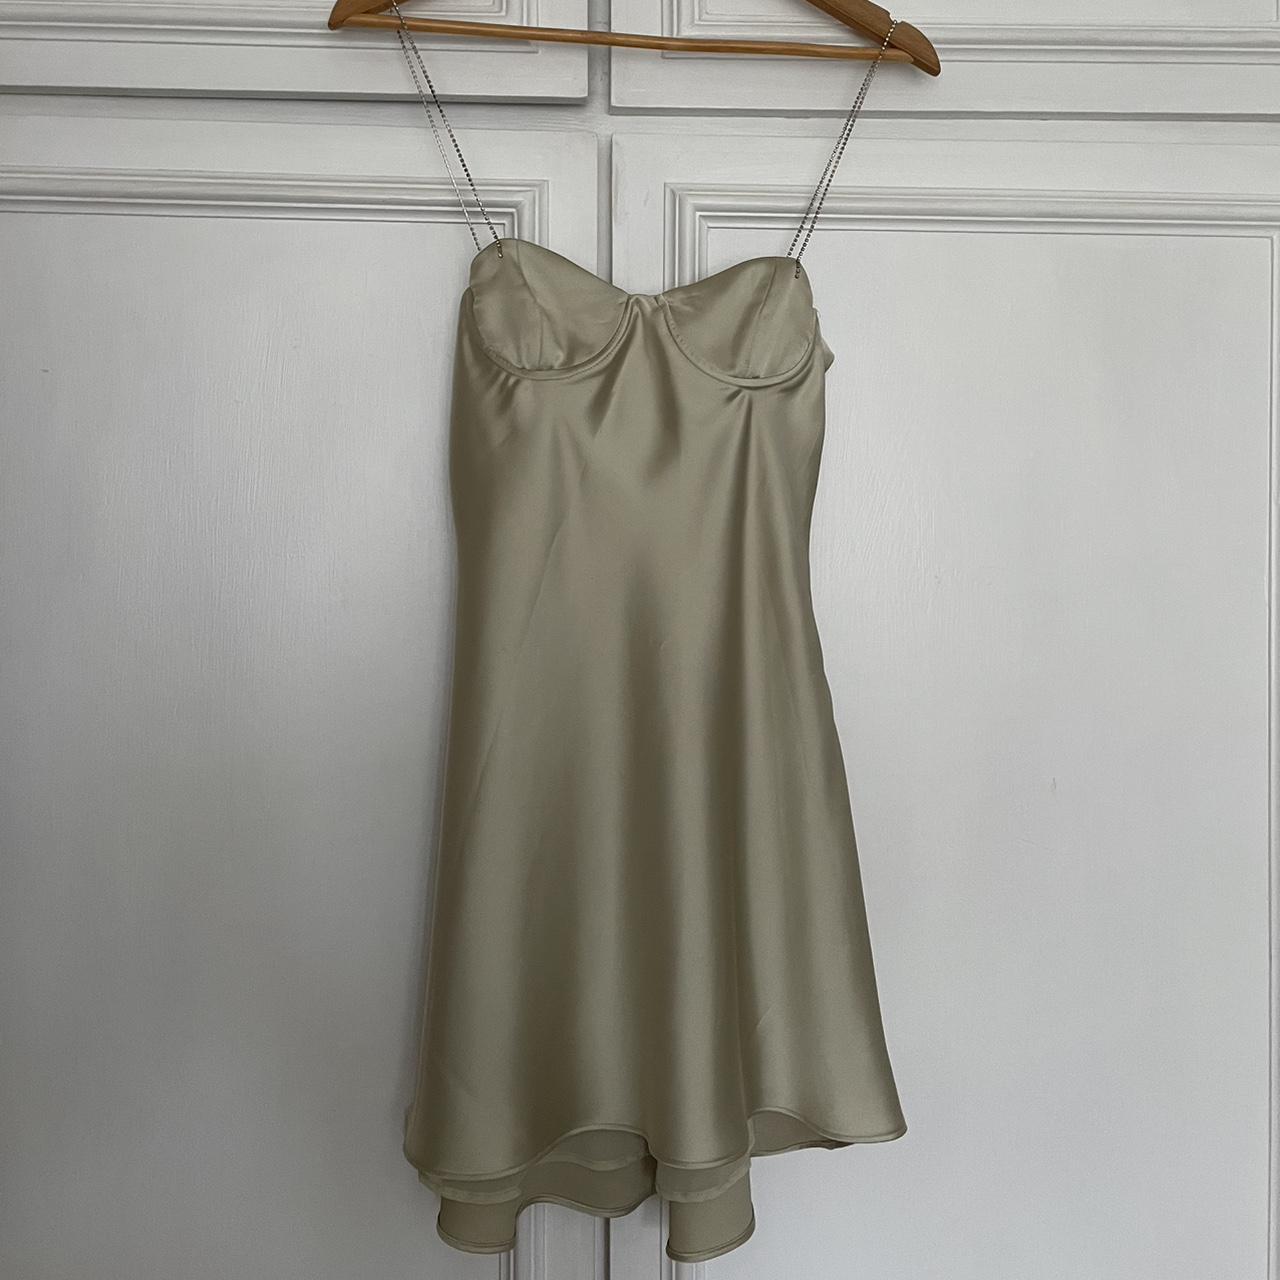 Mirror palais dupé dress from Zara. Green satin... - Depop